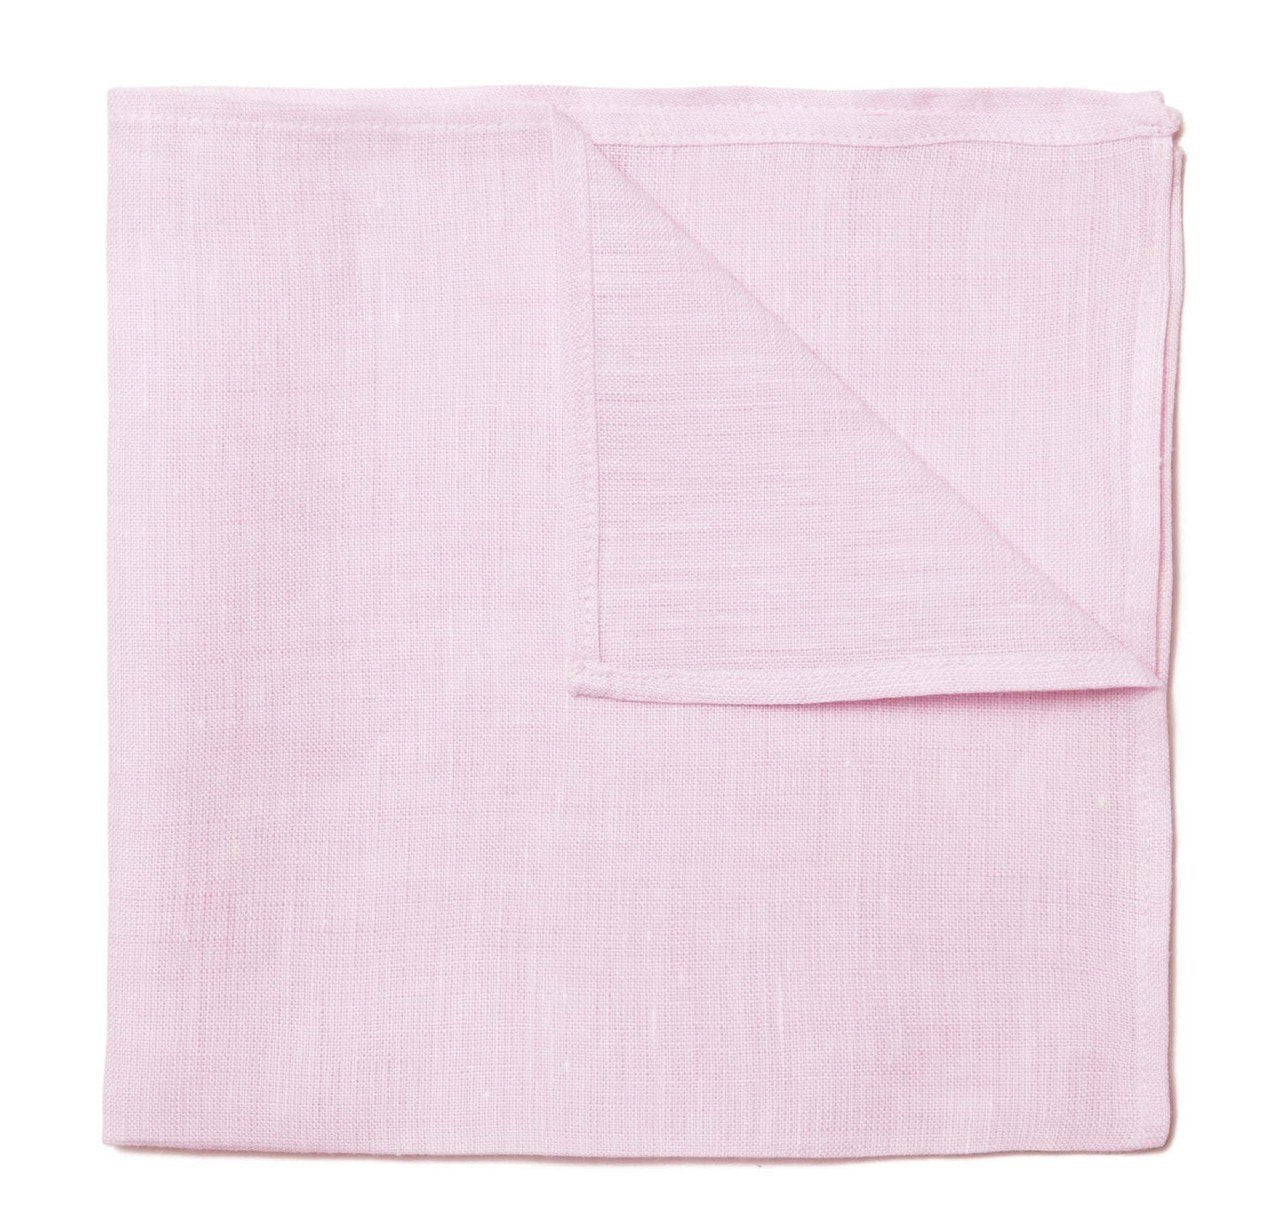 Sir Jack's Pink Linen Pocket Square